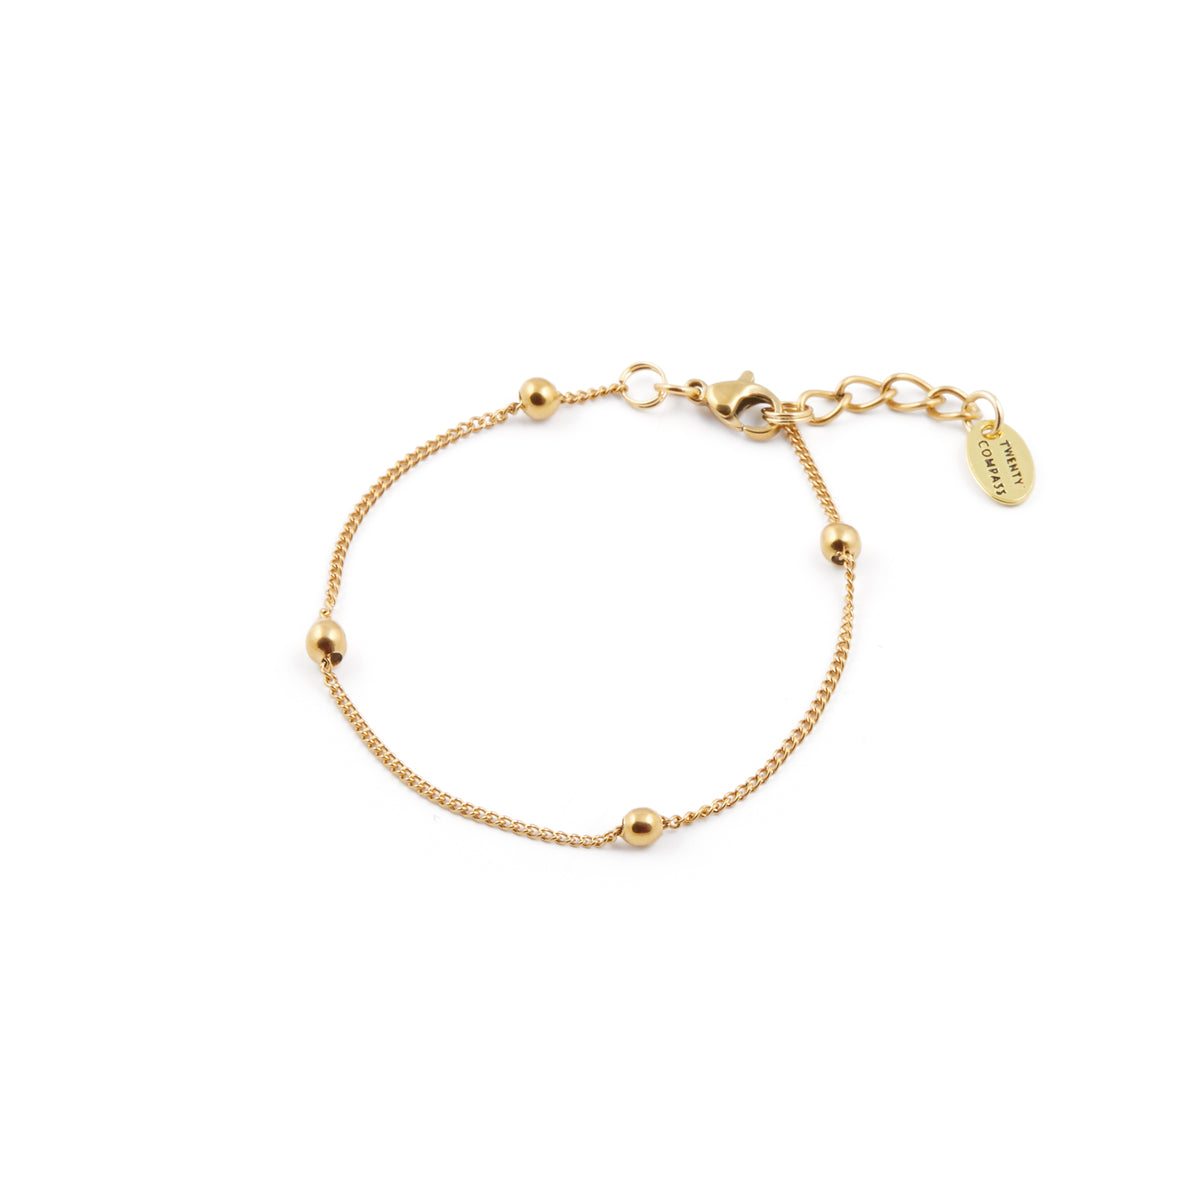 Darling Bracelet - Gold